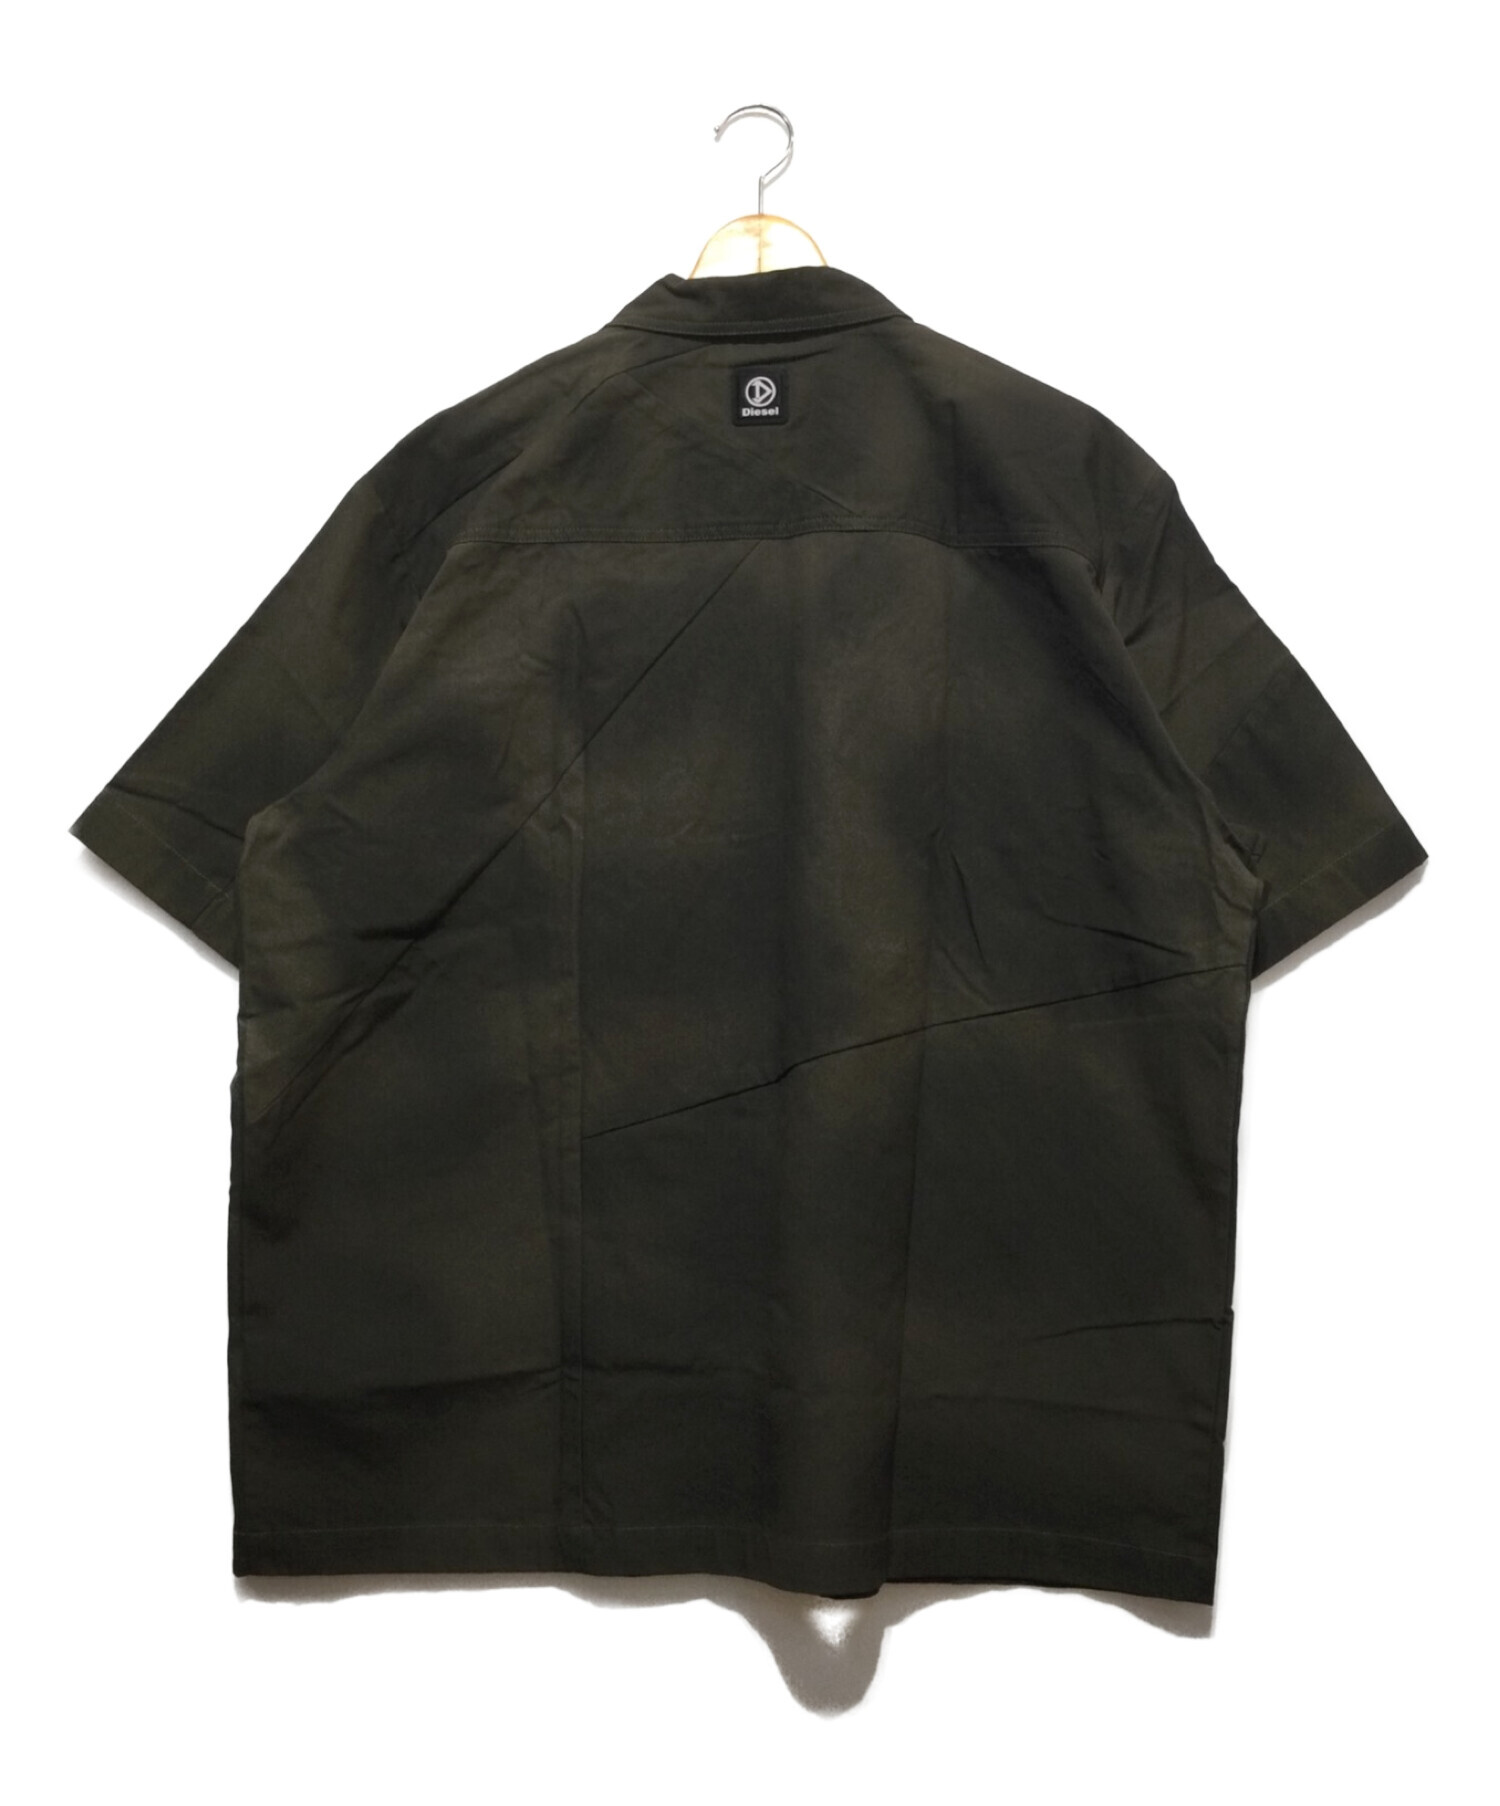 正規逆輸入品】 (新品未使用)ディーゼル メンズ 半袖シャツ XL シャツ